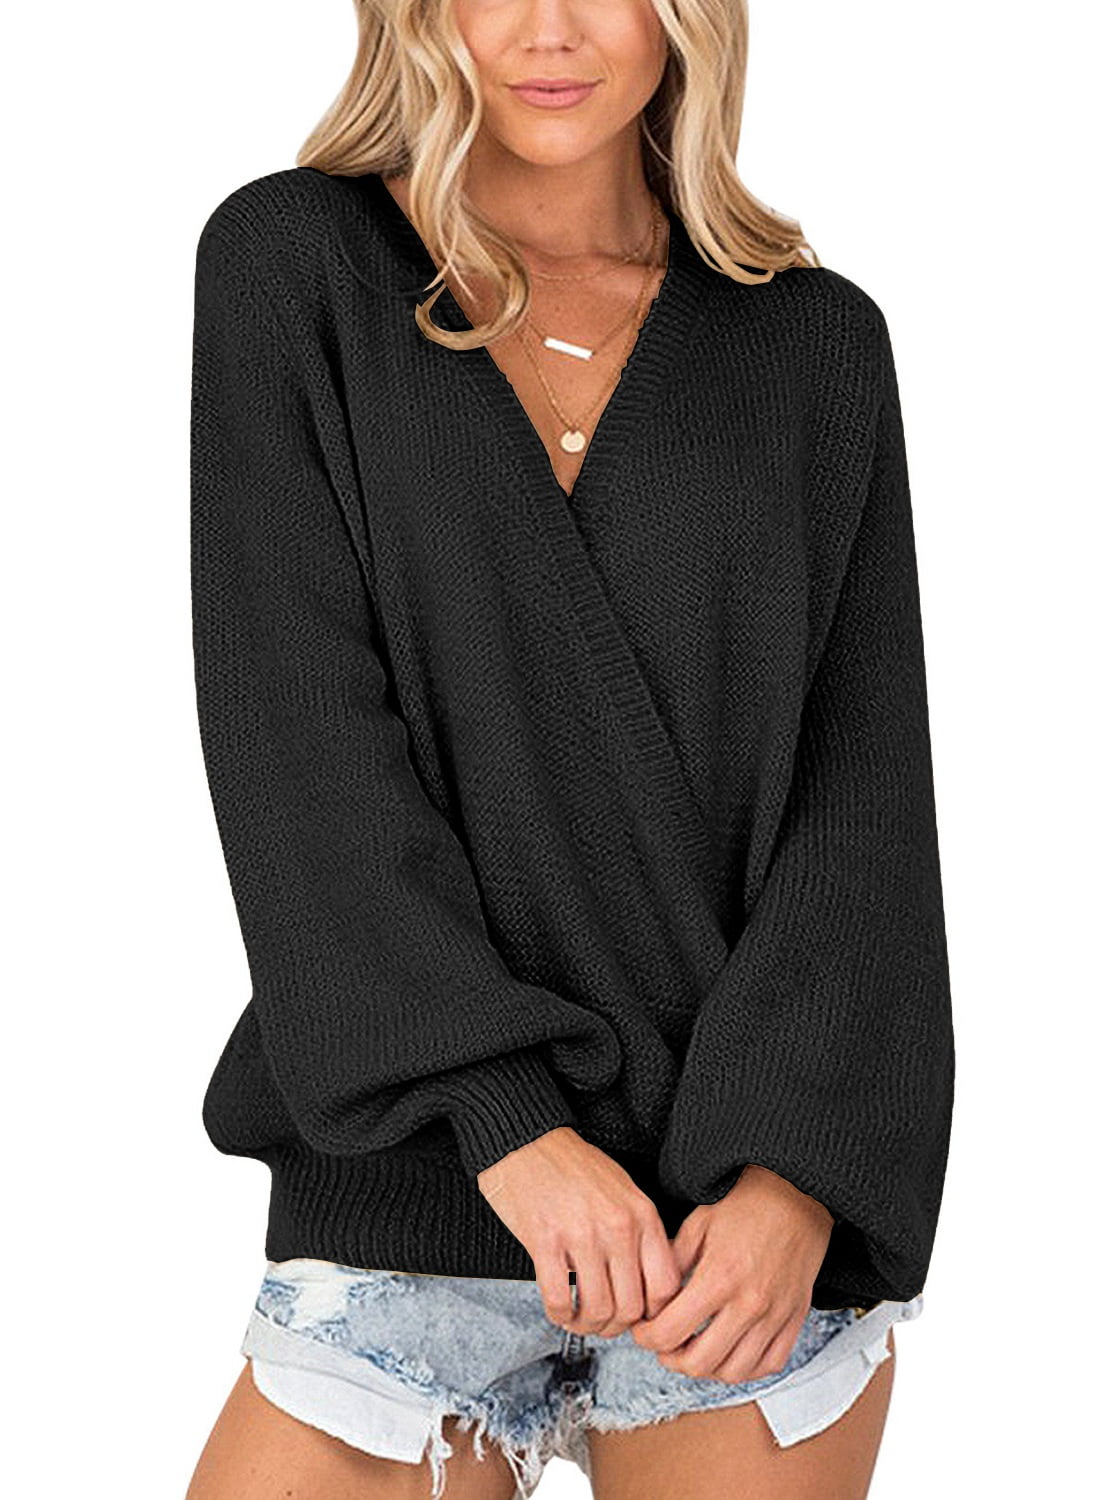 LookbookStore Women's Knit Long Sleeve Faux Wrap Surplice Winter Fall V Neck  Sweater Tops Size 2XL Size 20 Size 22 Black 